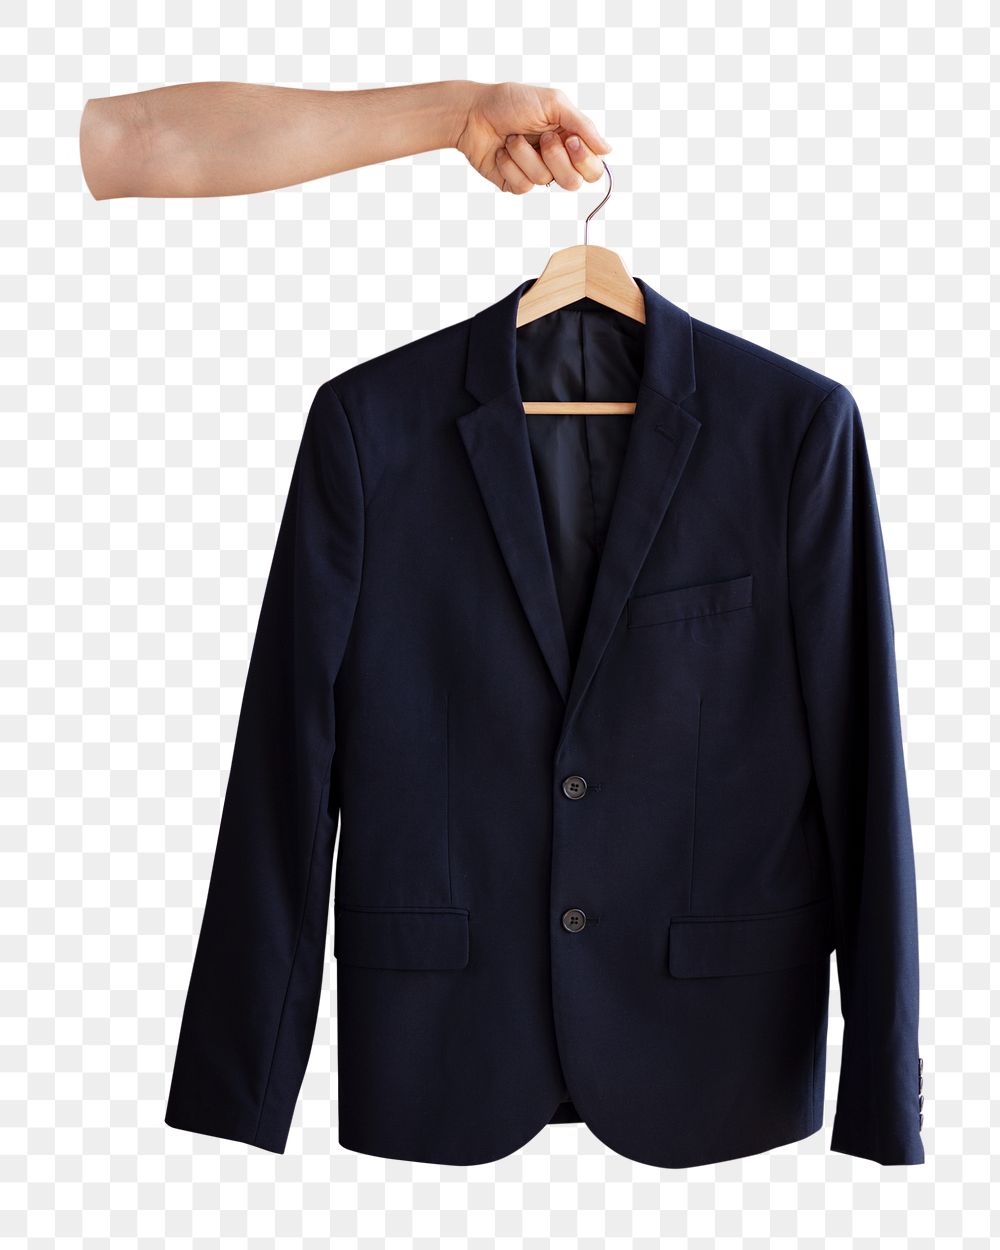 Businessman's suit png transparent background